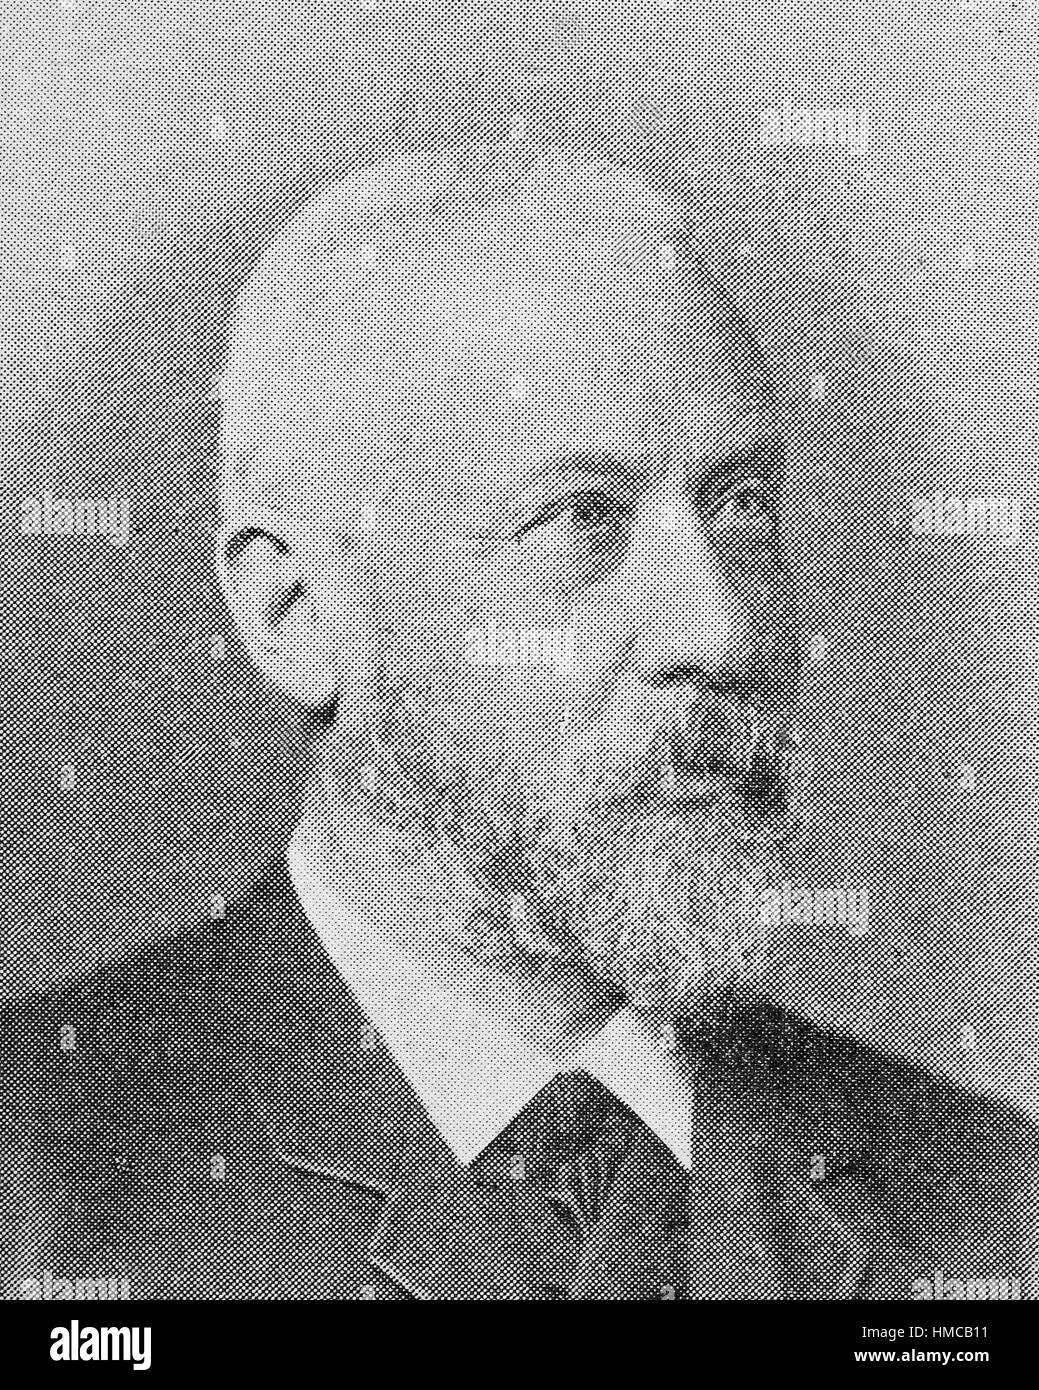 Wilhelm Dilthey, Deutsch, war 19. November 1833 - 1. Oktober 1911, ein deutscher Historiker, Psychologen, Soziologen und hermeneutische Philosoph, Foto oder Bild, veröffentlicht 1892, digital verbessert Stockfoto